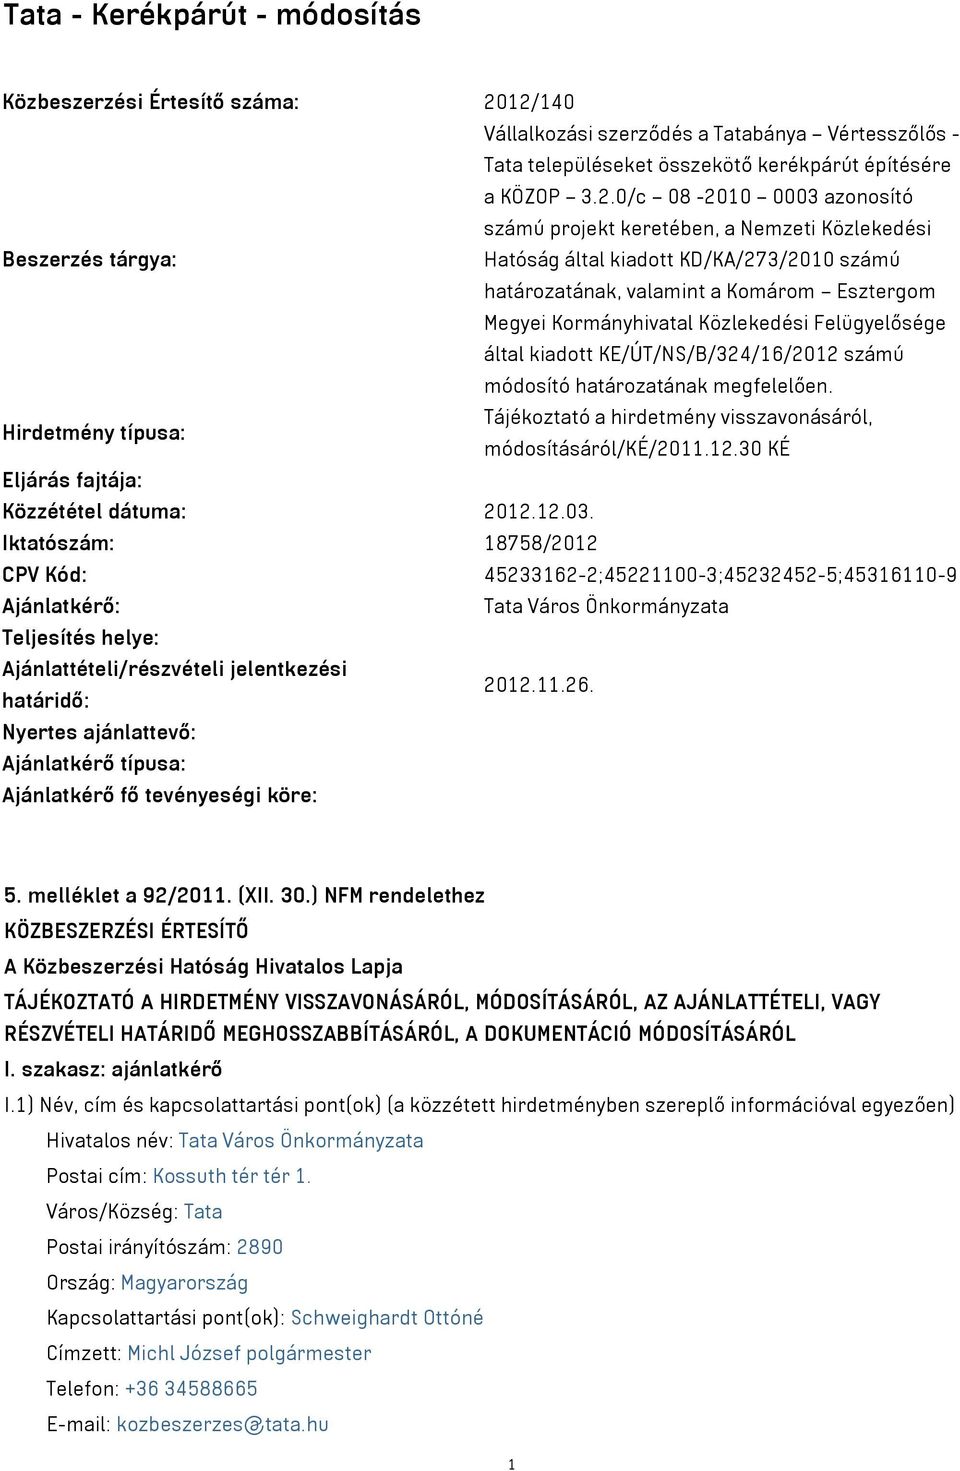 Beszerzés tárgya: Hatóság által kiadott KD/KA/273/2010 számú határozatának, valamint a Komárom Esztergom Megyei Kormányhivatal Közlekedési Felügyelősége által kiadott KE/ÚT/NS/B/324/16/2012 számú